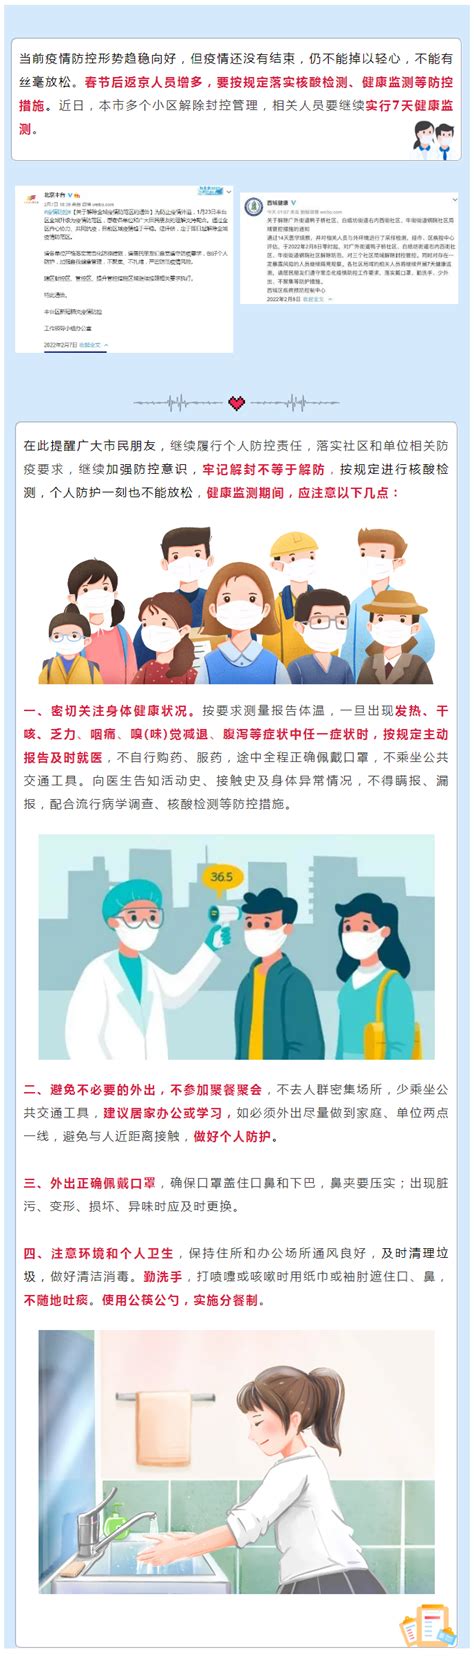 北京市疾病预防控制中心－北京吉艾姆科技有限公司